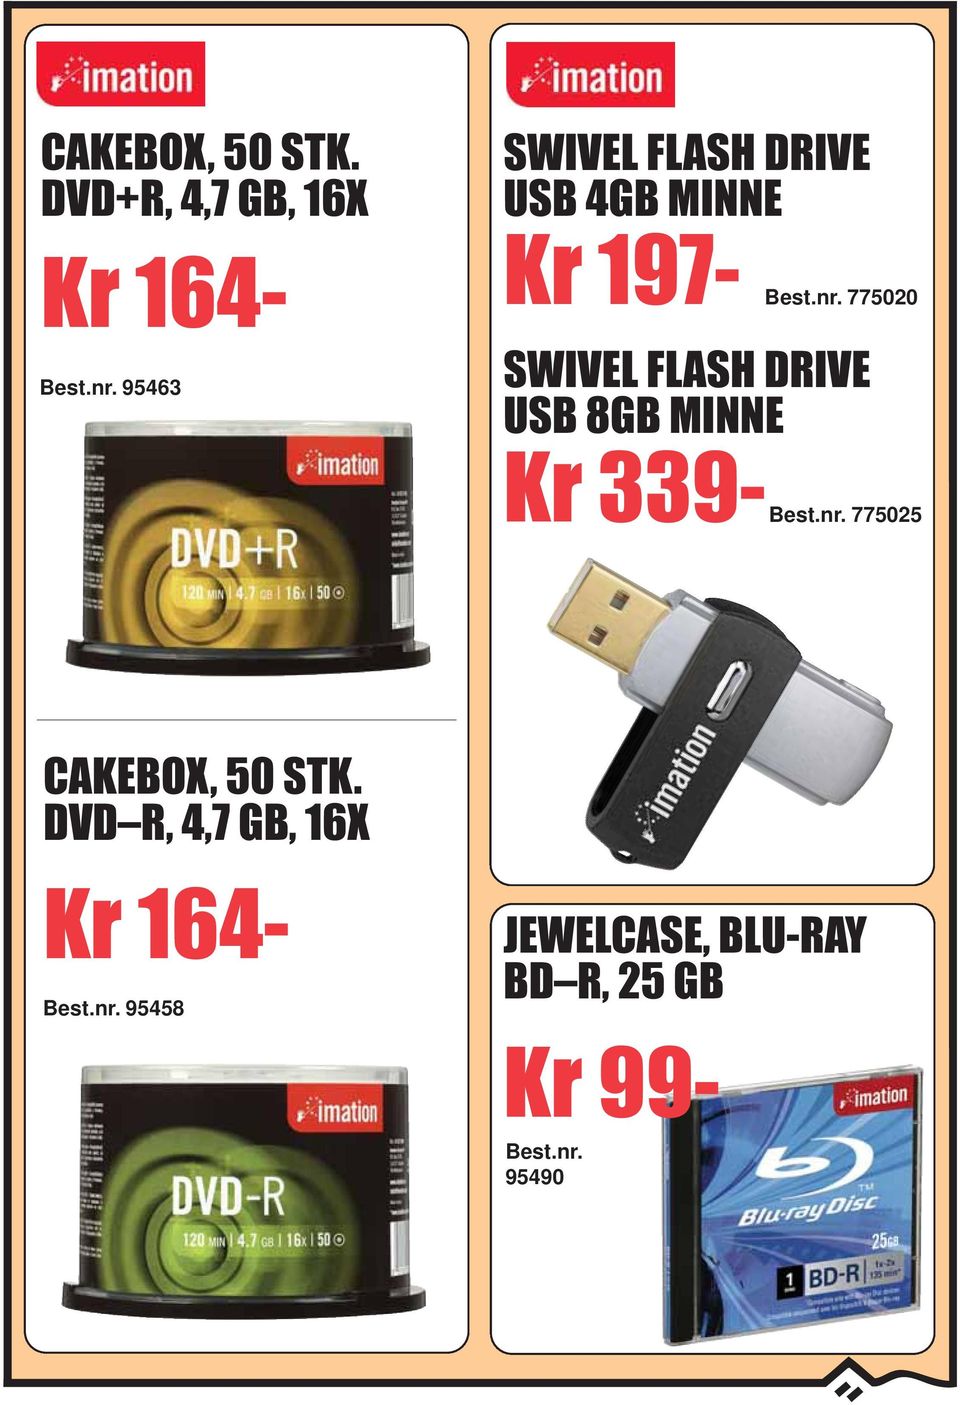 MINNE Kr 197-775020 SWIVEL FLASH DRIVE USB 8GB MINNE Kr